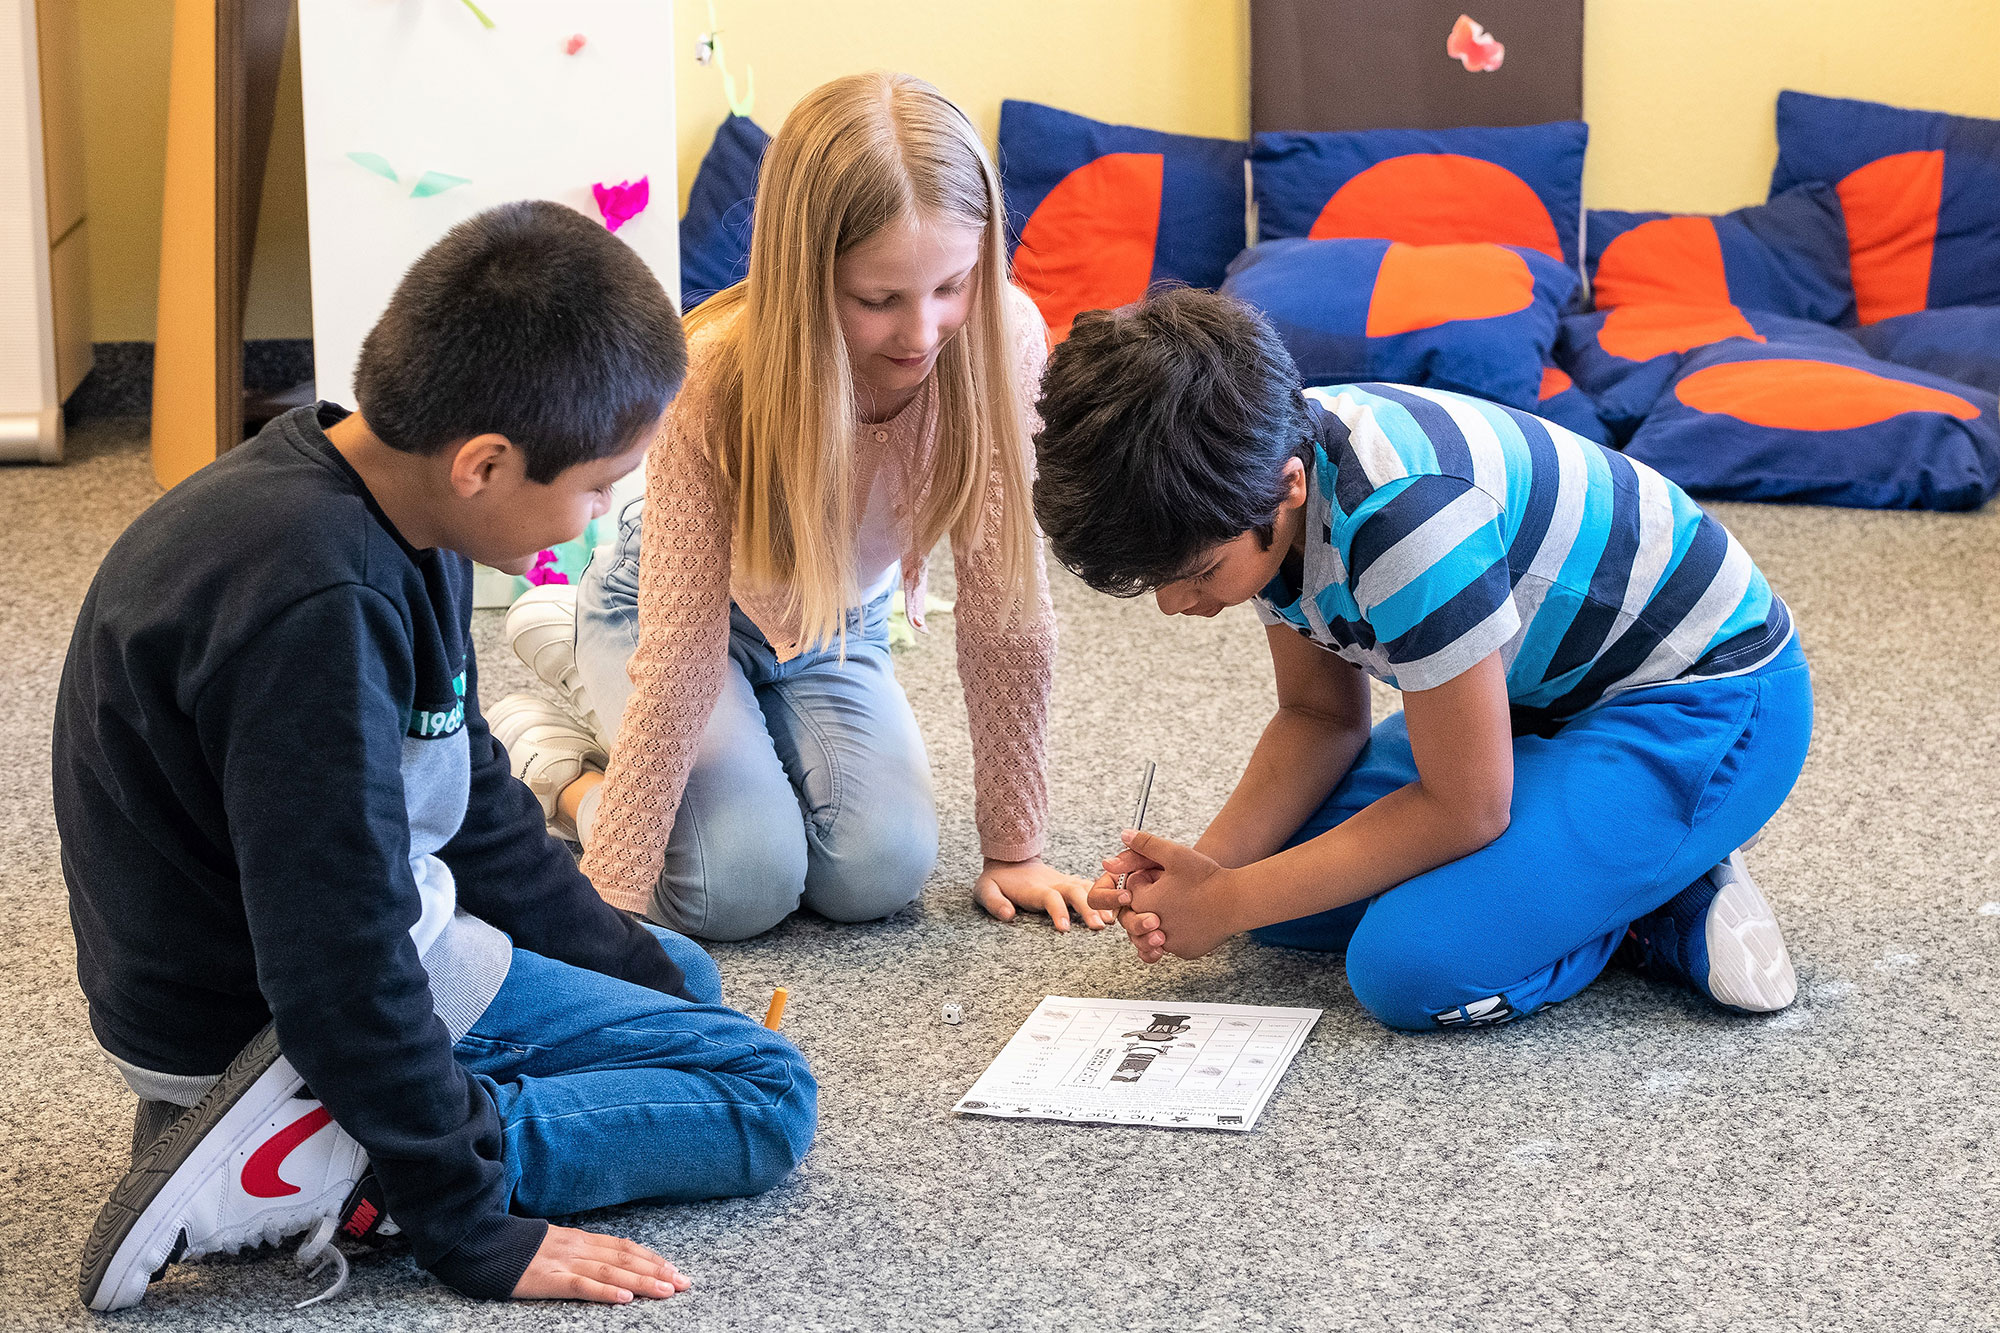 Ein Mädchen und zwei Jungen sitzen auf dem Boden und lernen anhand eines Spiels mit einem Würfel.	